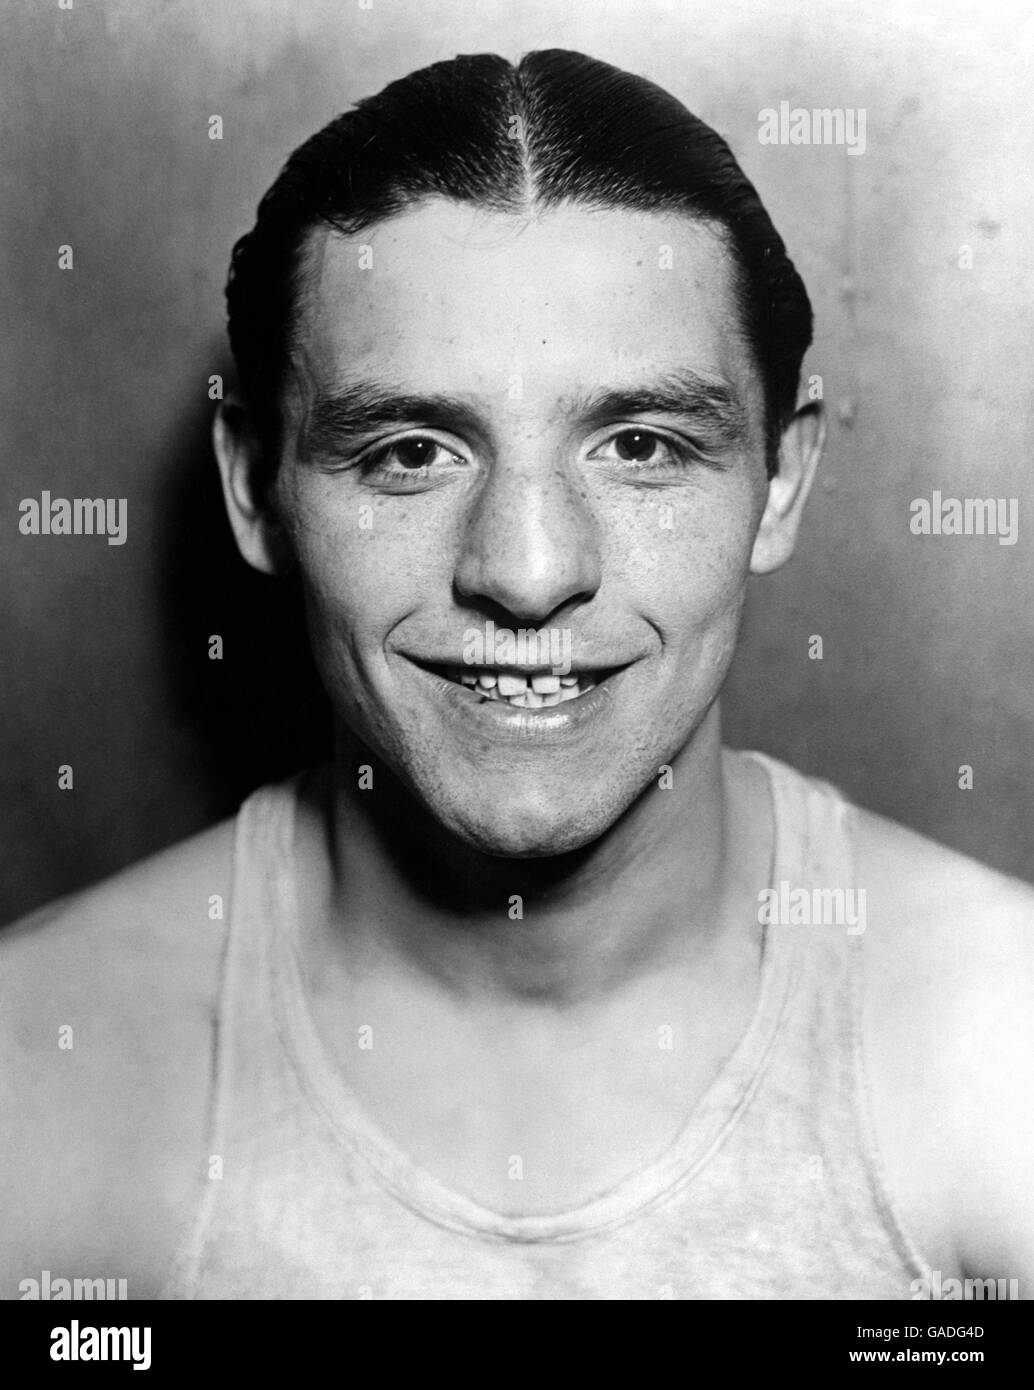 Sport - Boxing - British Boxers dans les années 1930.Jack 'Kids' Berg, le « tourbillon de Whitechapel », photographié lors d'un entraînement dans un gymnase de New York en janvier 1930 Banque D'Images